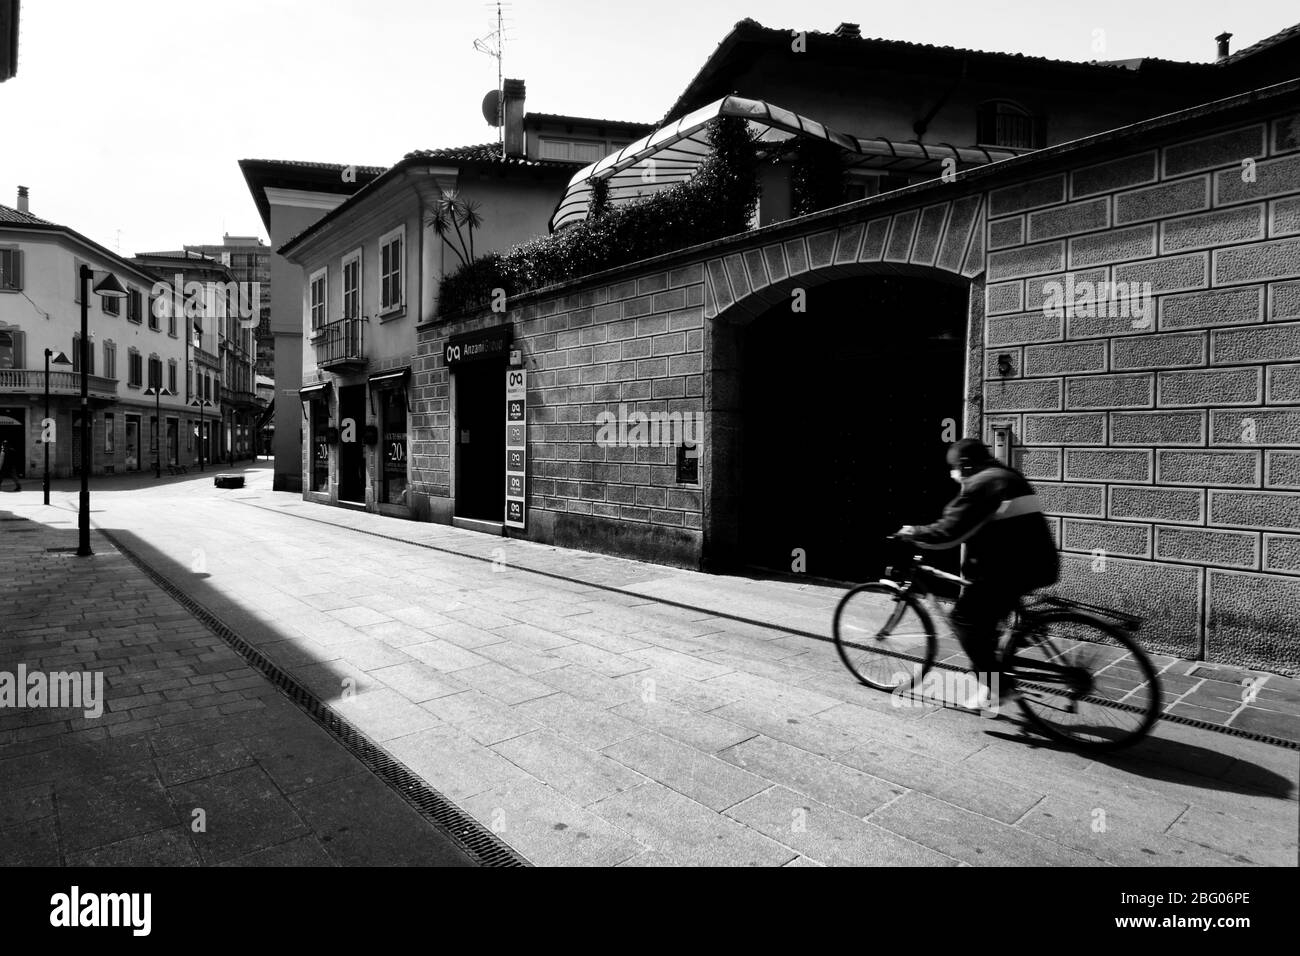 Egli silenzio e la desolazione in una città vicino a Milano, domenica mattina, durante Coronavirus. Nella strada principale del centro città solo un uomo in bicicletta w Foto Stock